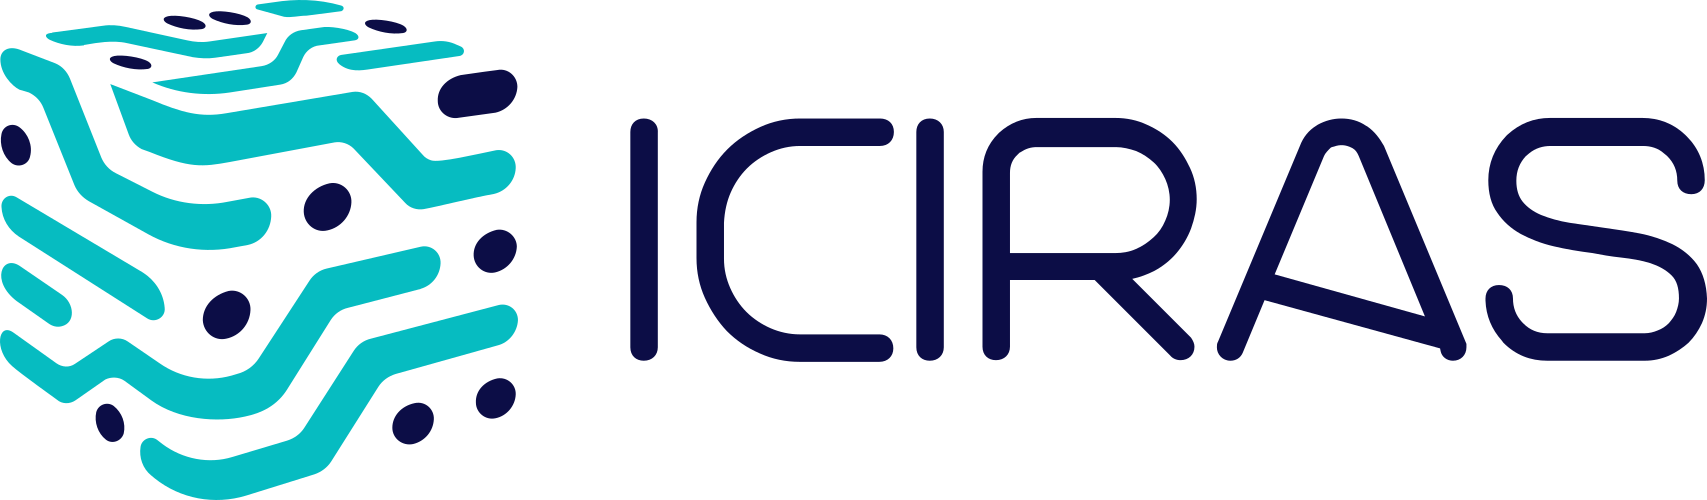 ICIRAS Agency